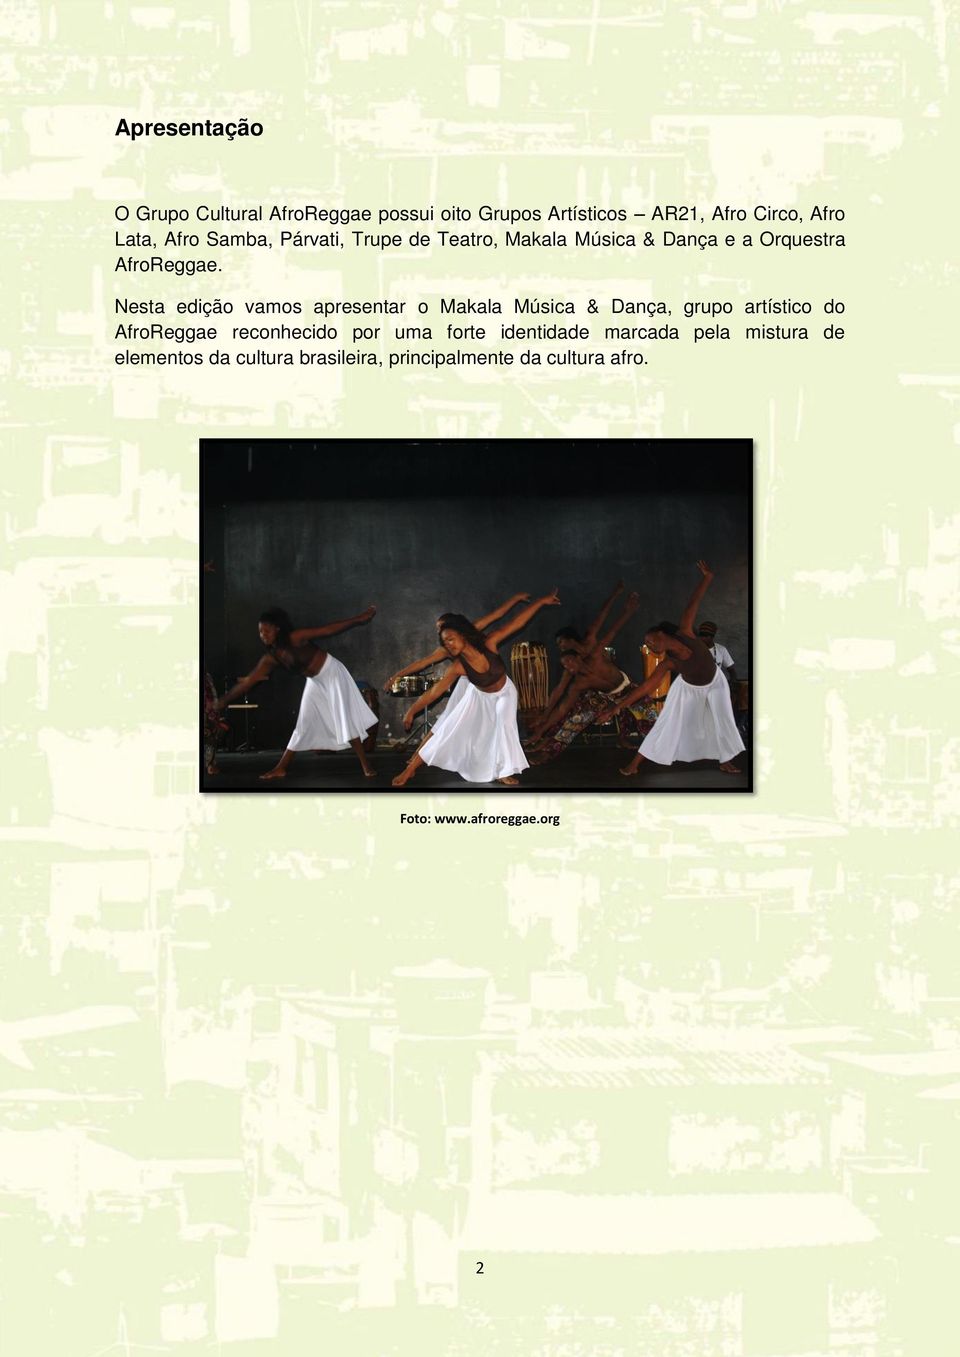 Nesta edição vamos apresentar o Makala Música & Dança, grupo artístico do AfroReggae reconhecido por